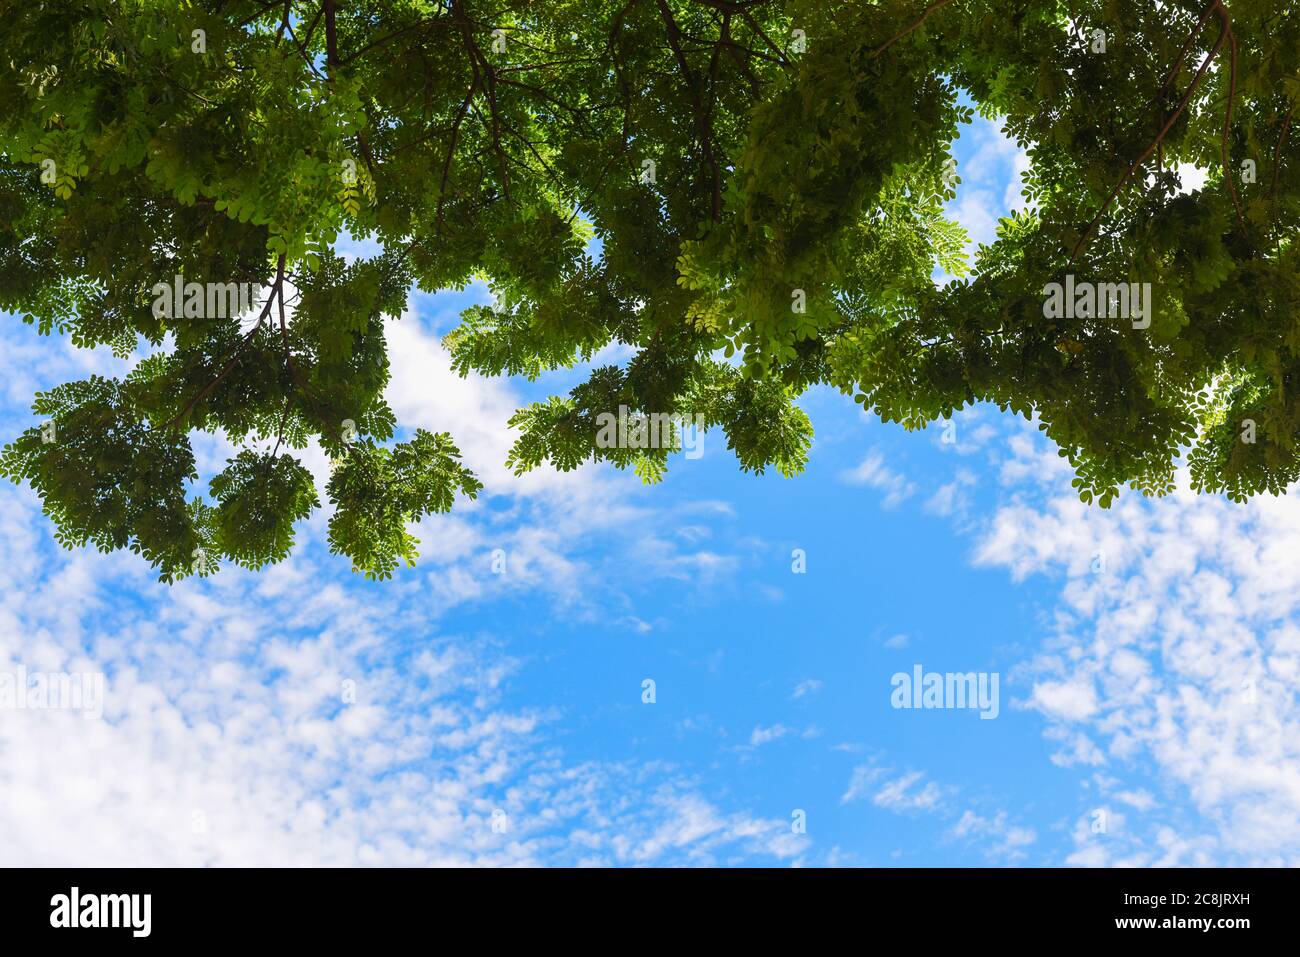 Grüne Blätter und blauer Himmel mit Sonnenlicht in der Sommersaison.Blick auf die Baumspitze einer riesigen Platane in blau sonnigen Tag. Stockfoto